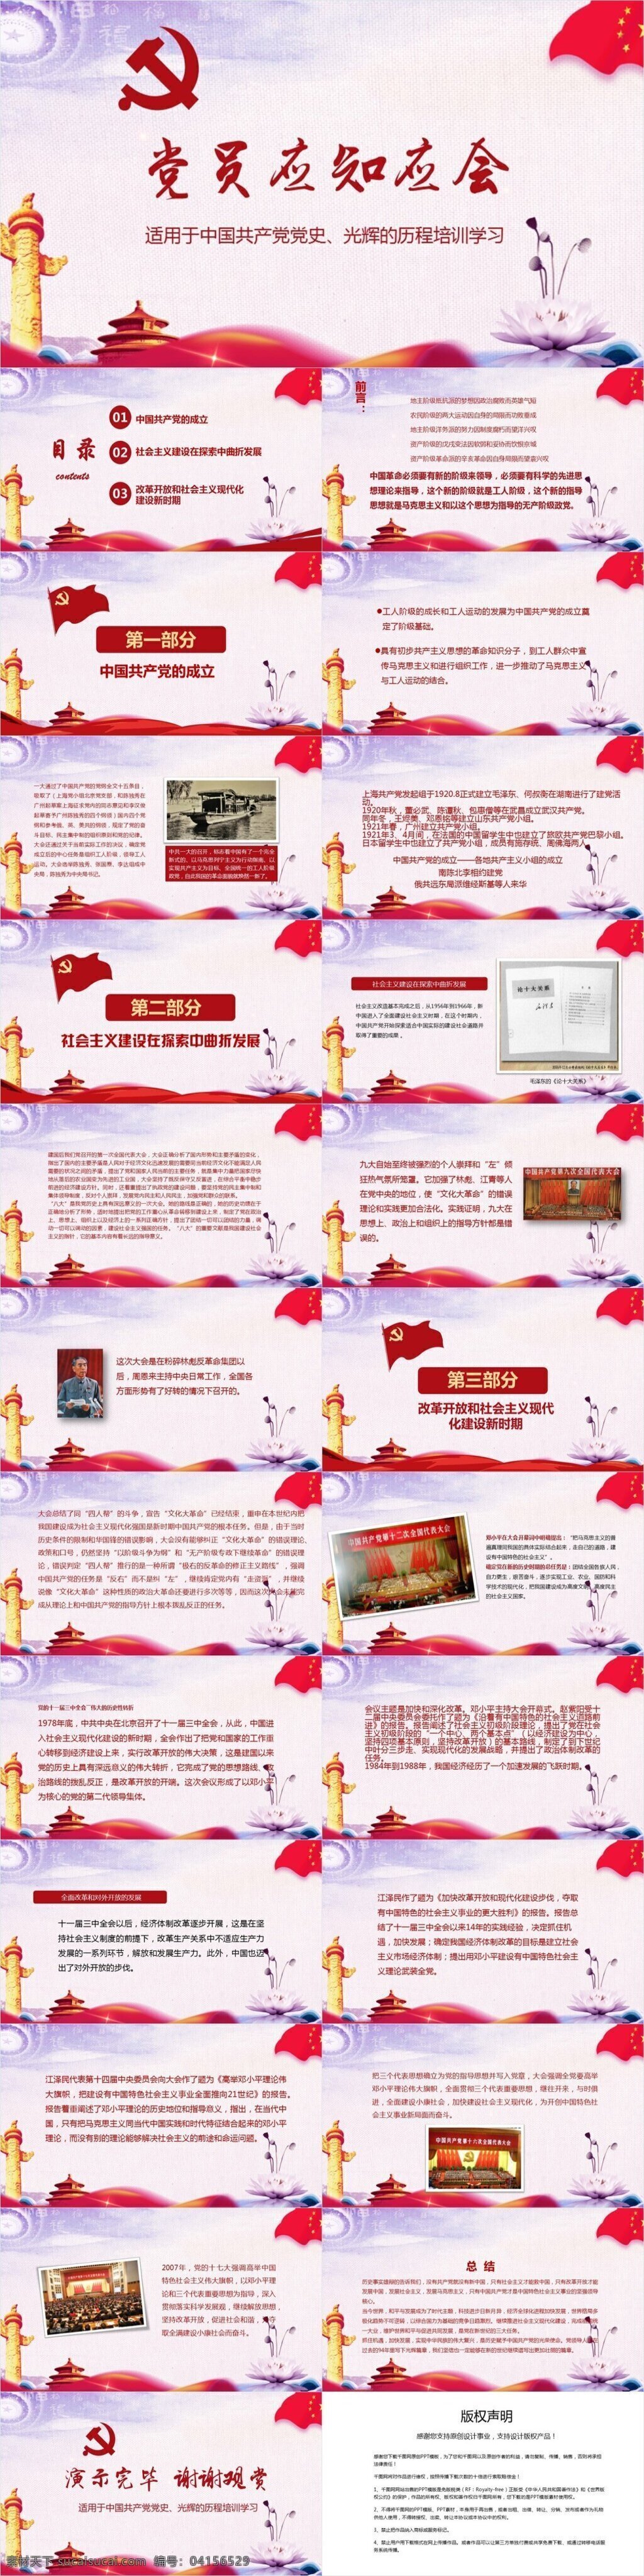 中国共产党 党史 历程 培训 学习 模板 范本 改革开放 社会主义建设 社会主义现代